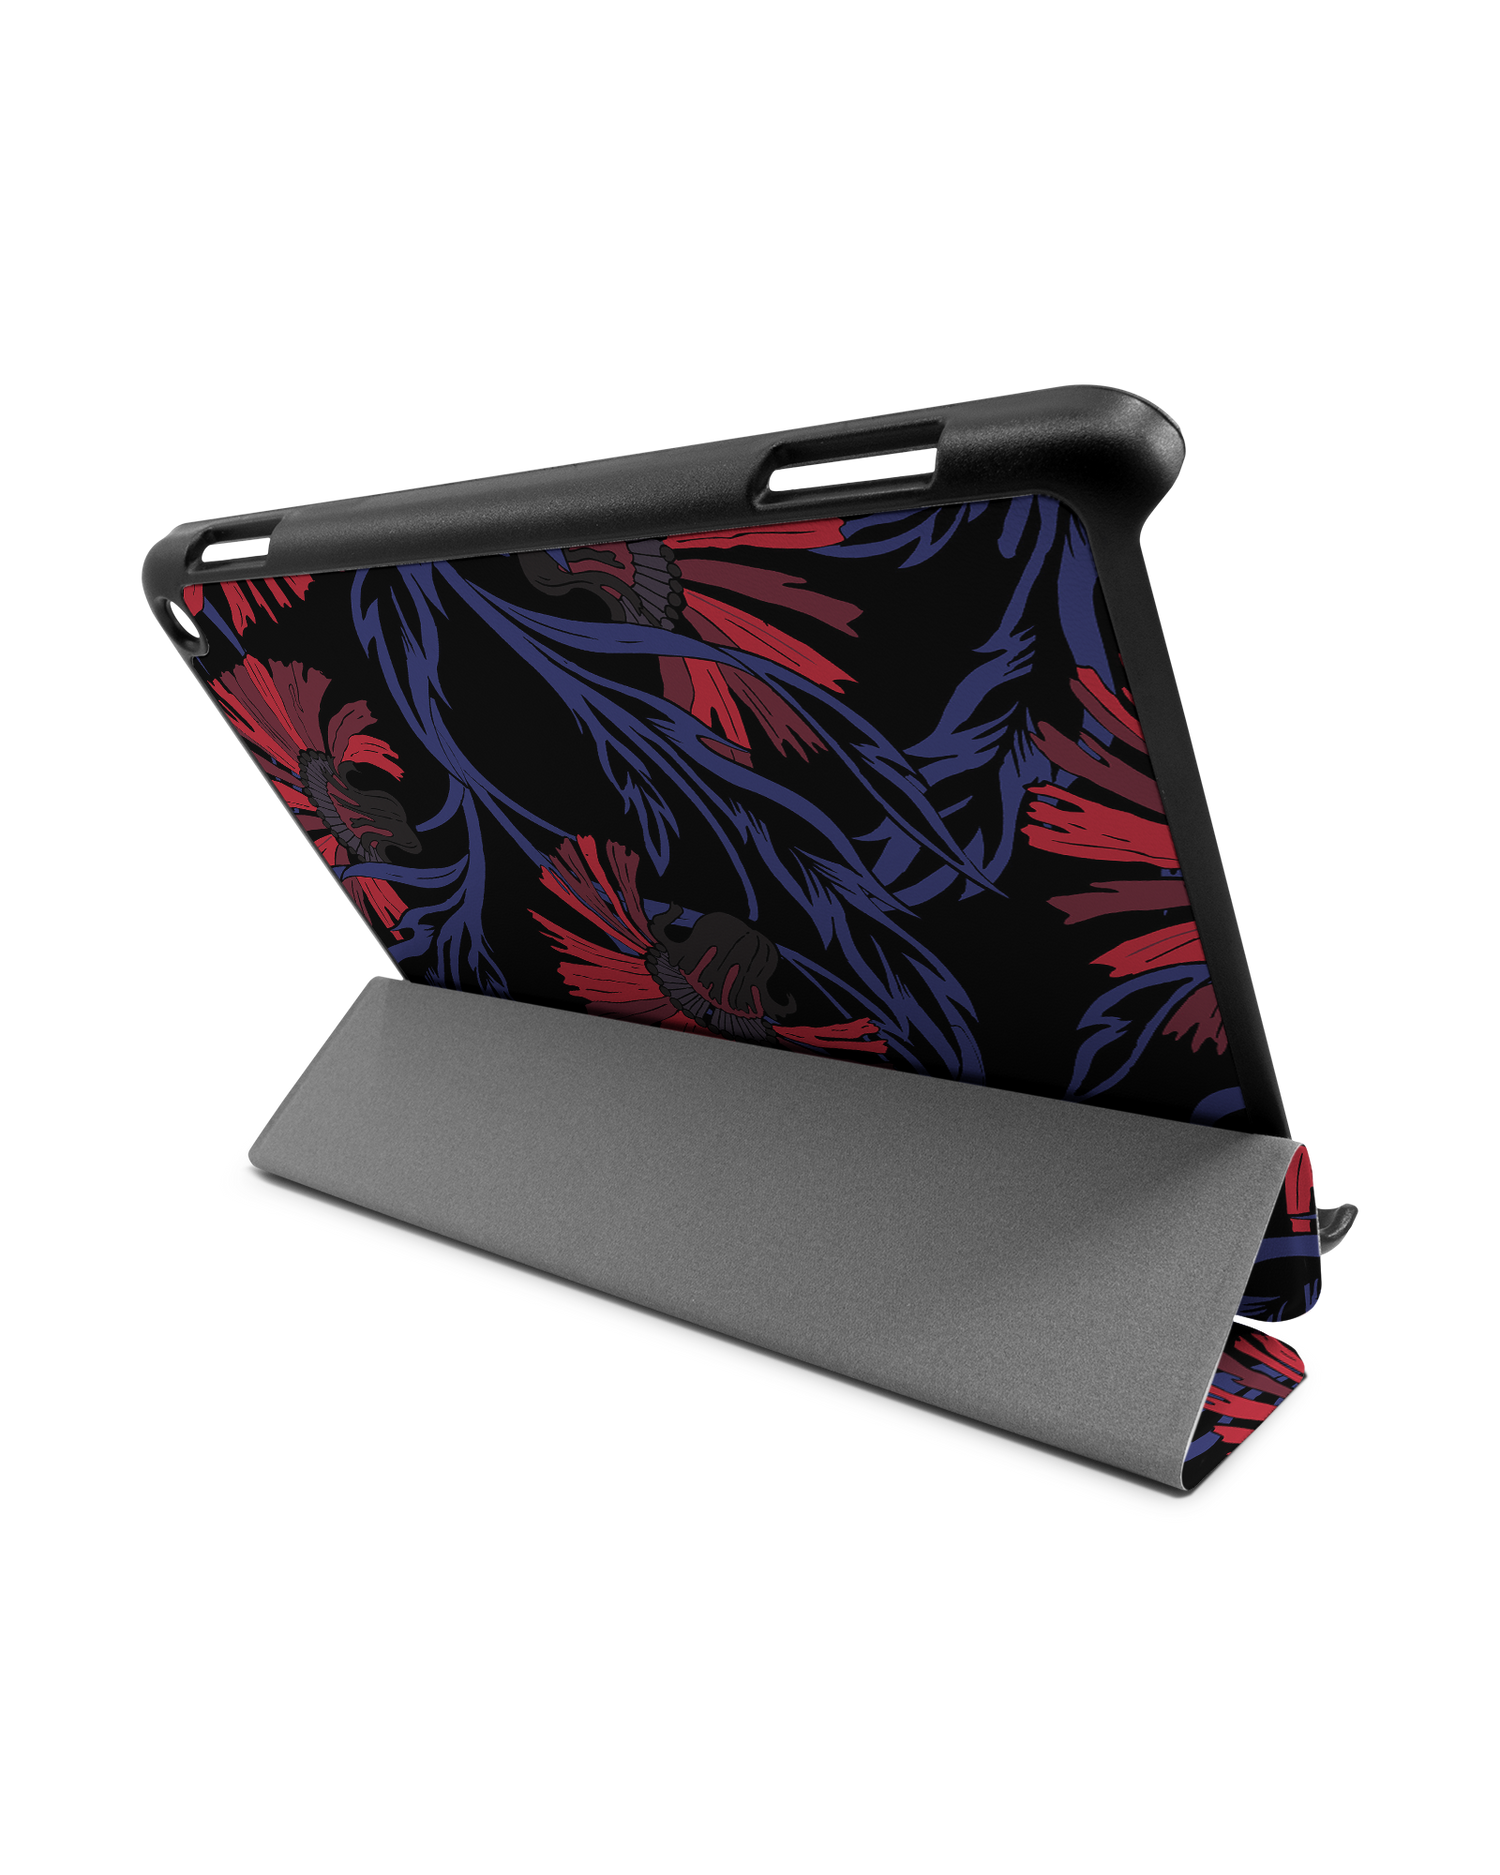 Midnight Floral Tablet Smart Case für Amazon Fire HD 8 (2022), Amazon Fire HD 8 Plus (2022), Amazon Fire HD 8 (2020), Amazon Fire HD 8 Plus (2020): Aufgestellt im Querformat